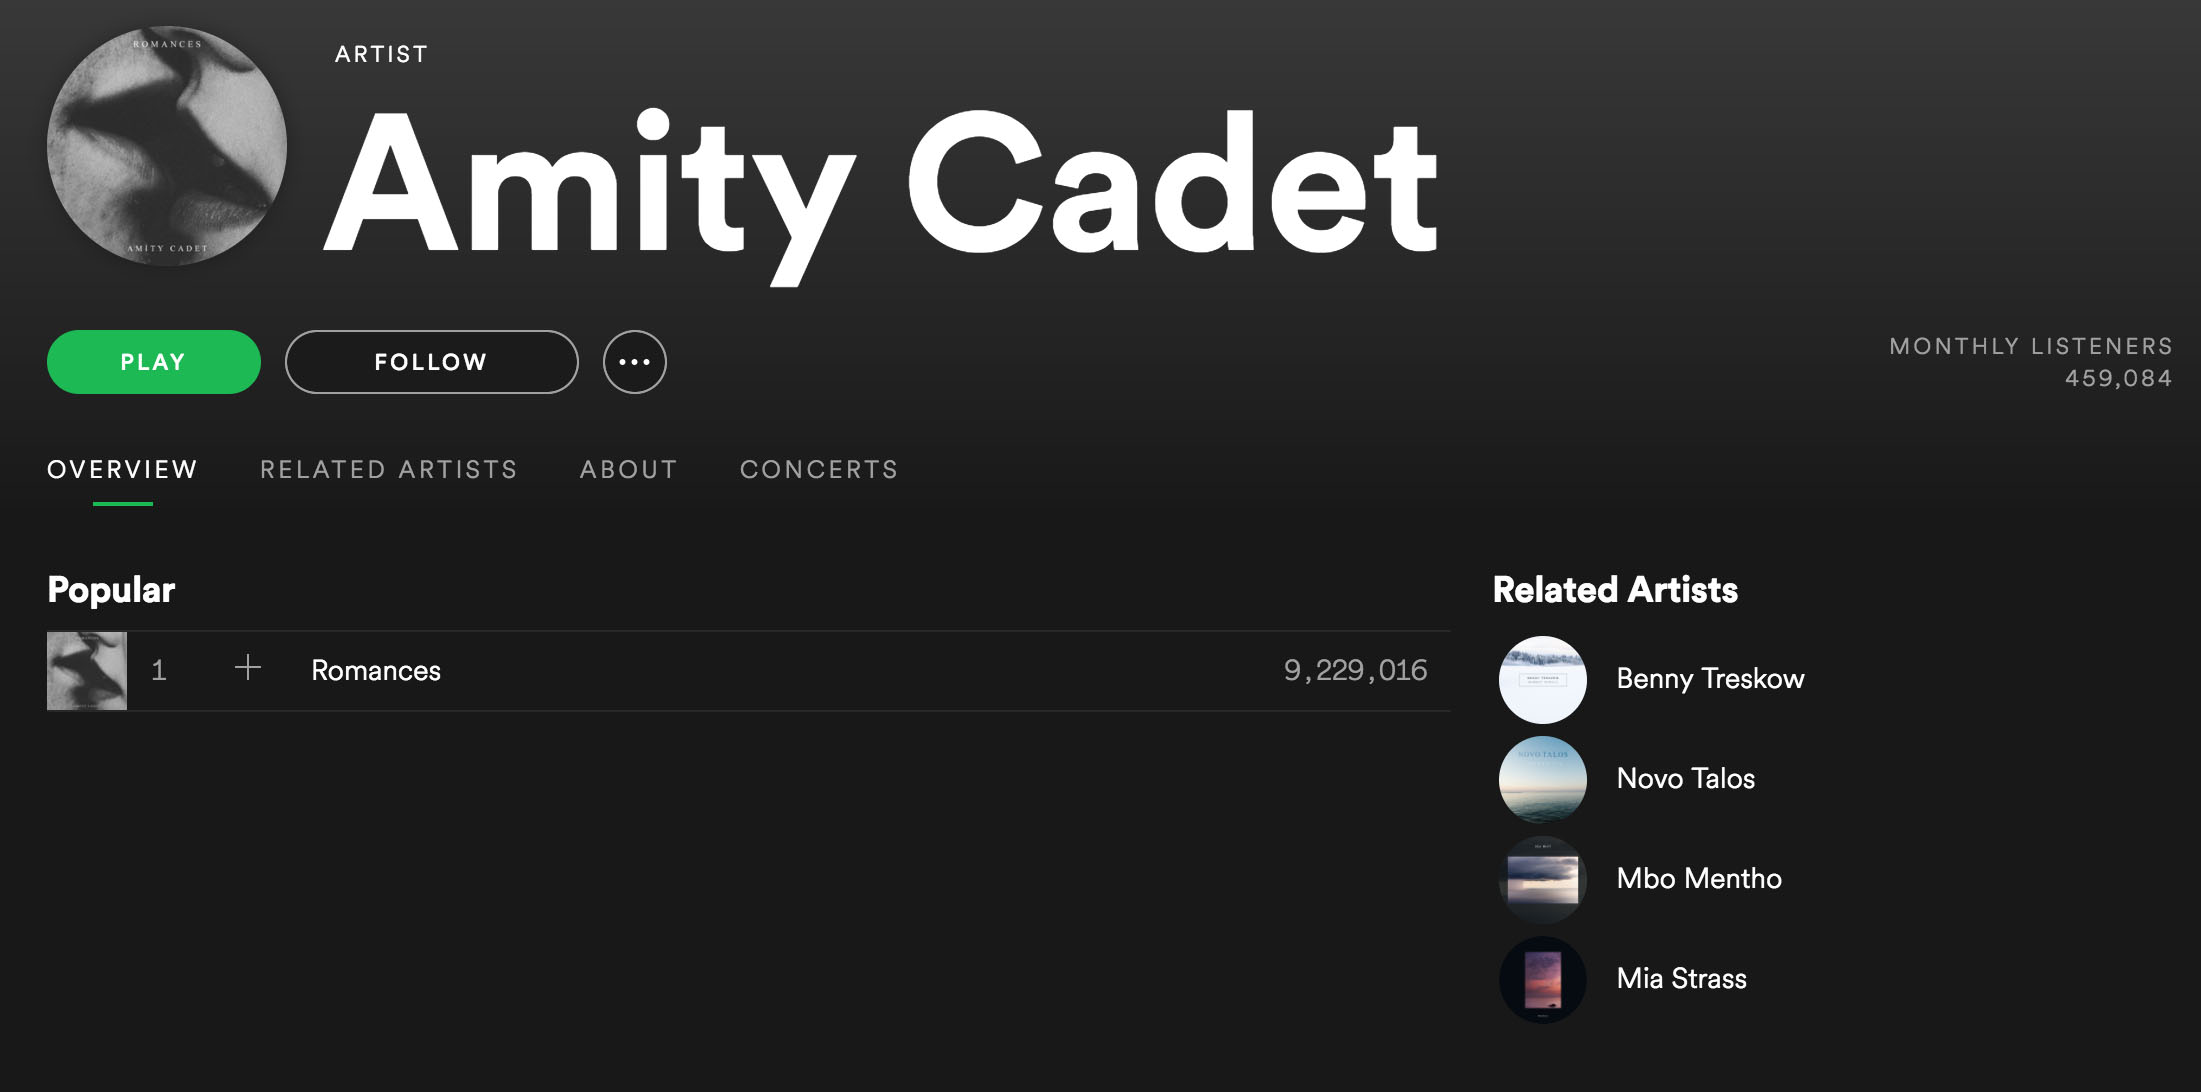 Amity Cadet er et eksempel på en artist som har over ni millioner avspillinger på Spotify, mens som nesten ikke finnes andre steder.